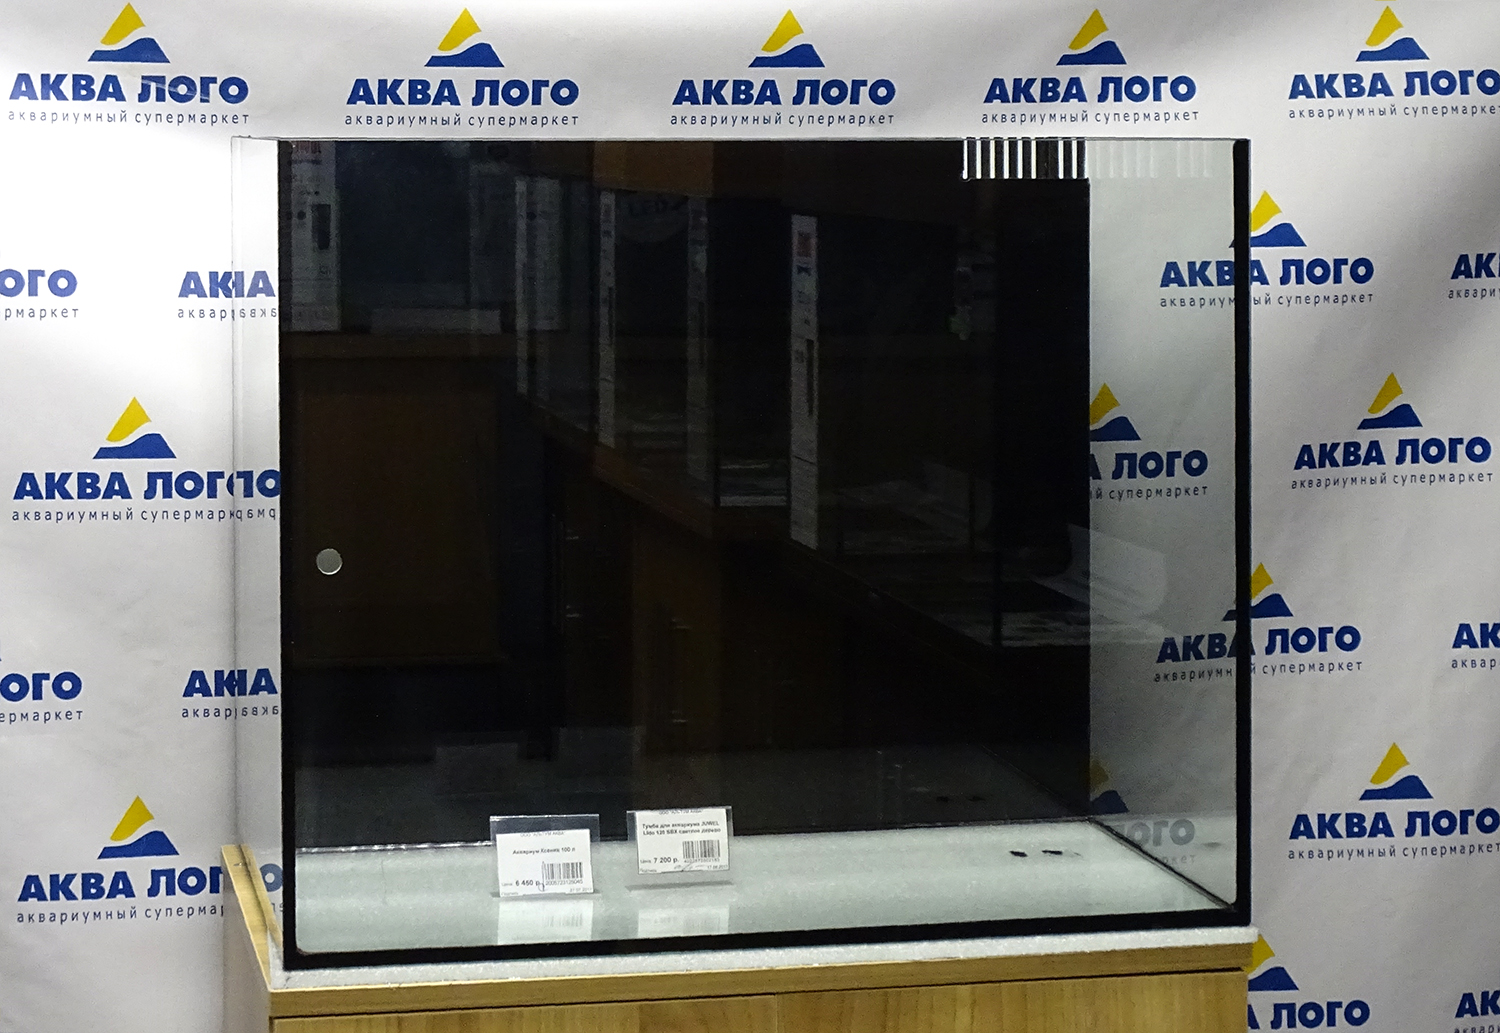 Морской аквариум Ксения объемом 100 литров 6450 рублей в супермаркетах Аква Лого!